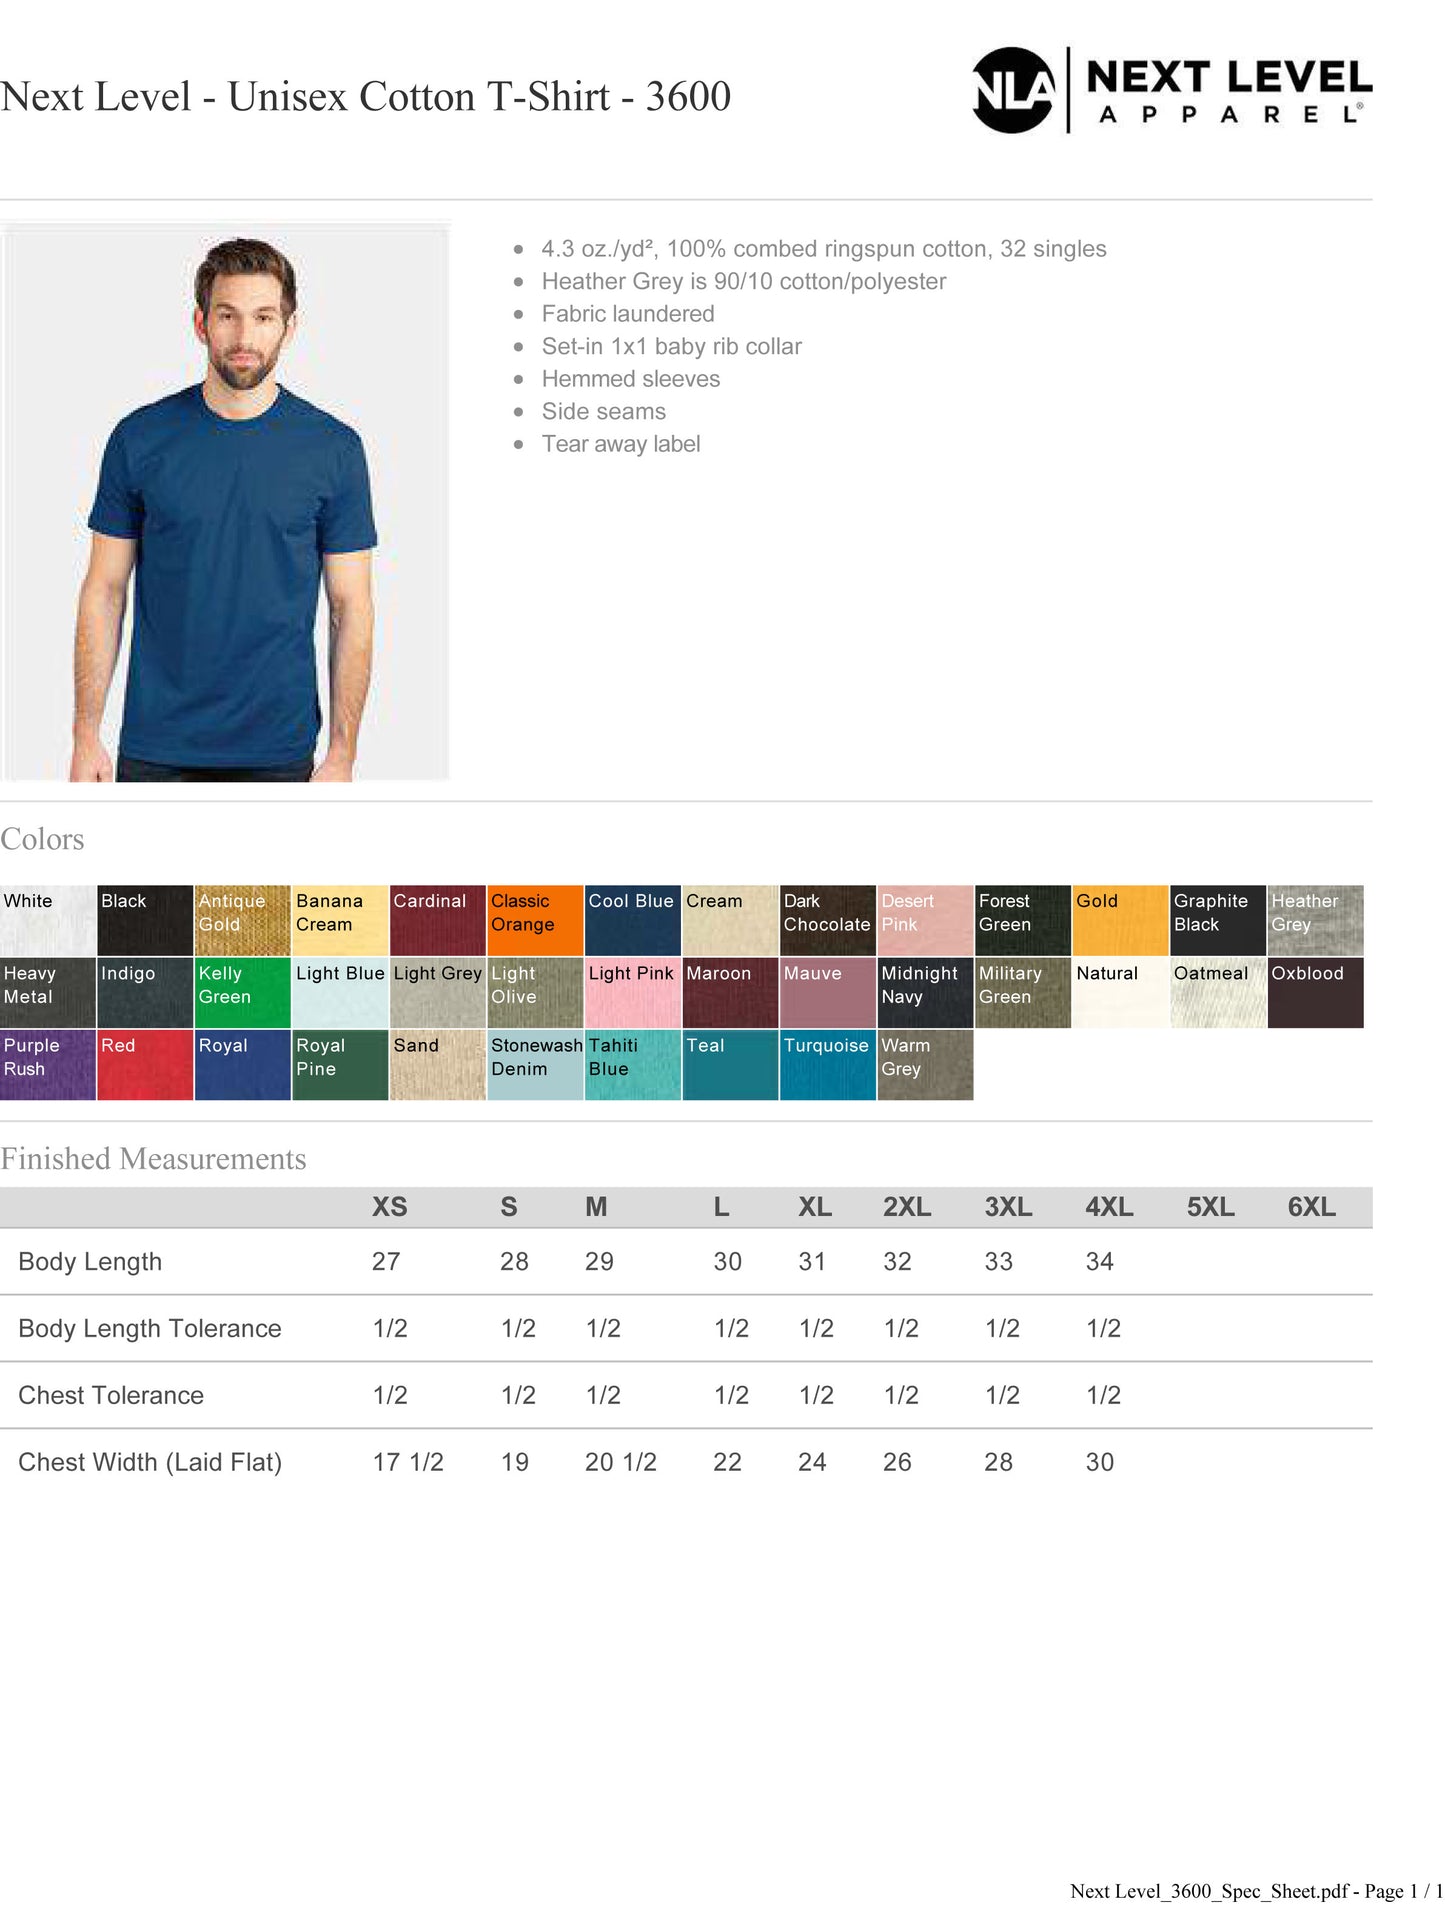 Customized Next Level Unisex Cotton T-Shirt 3600